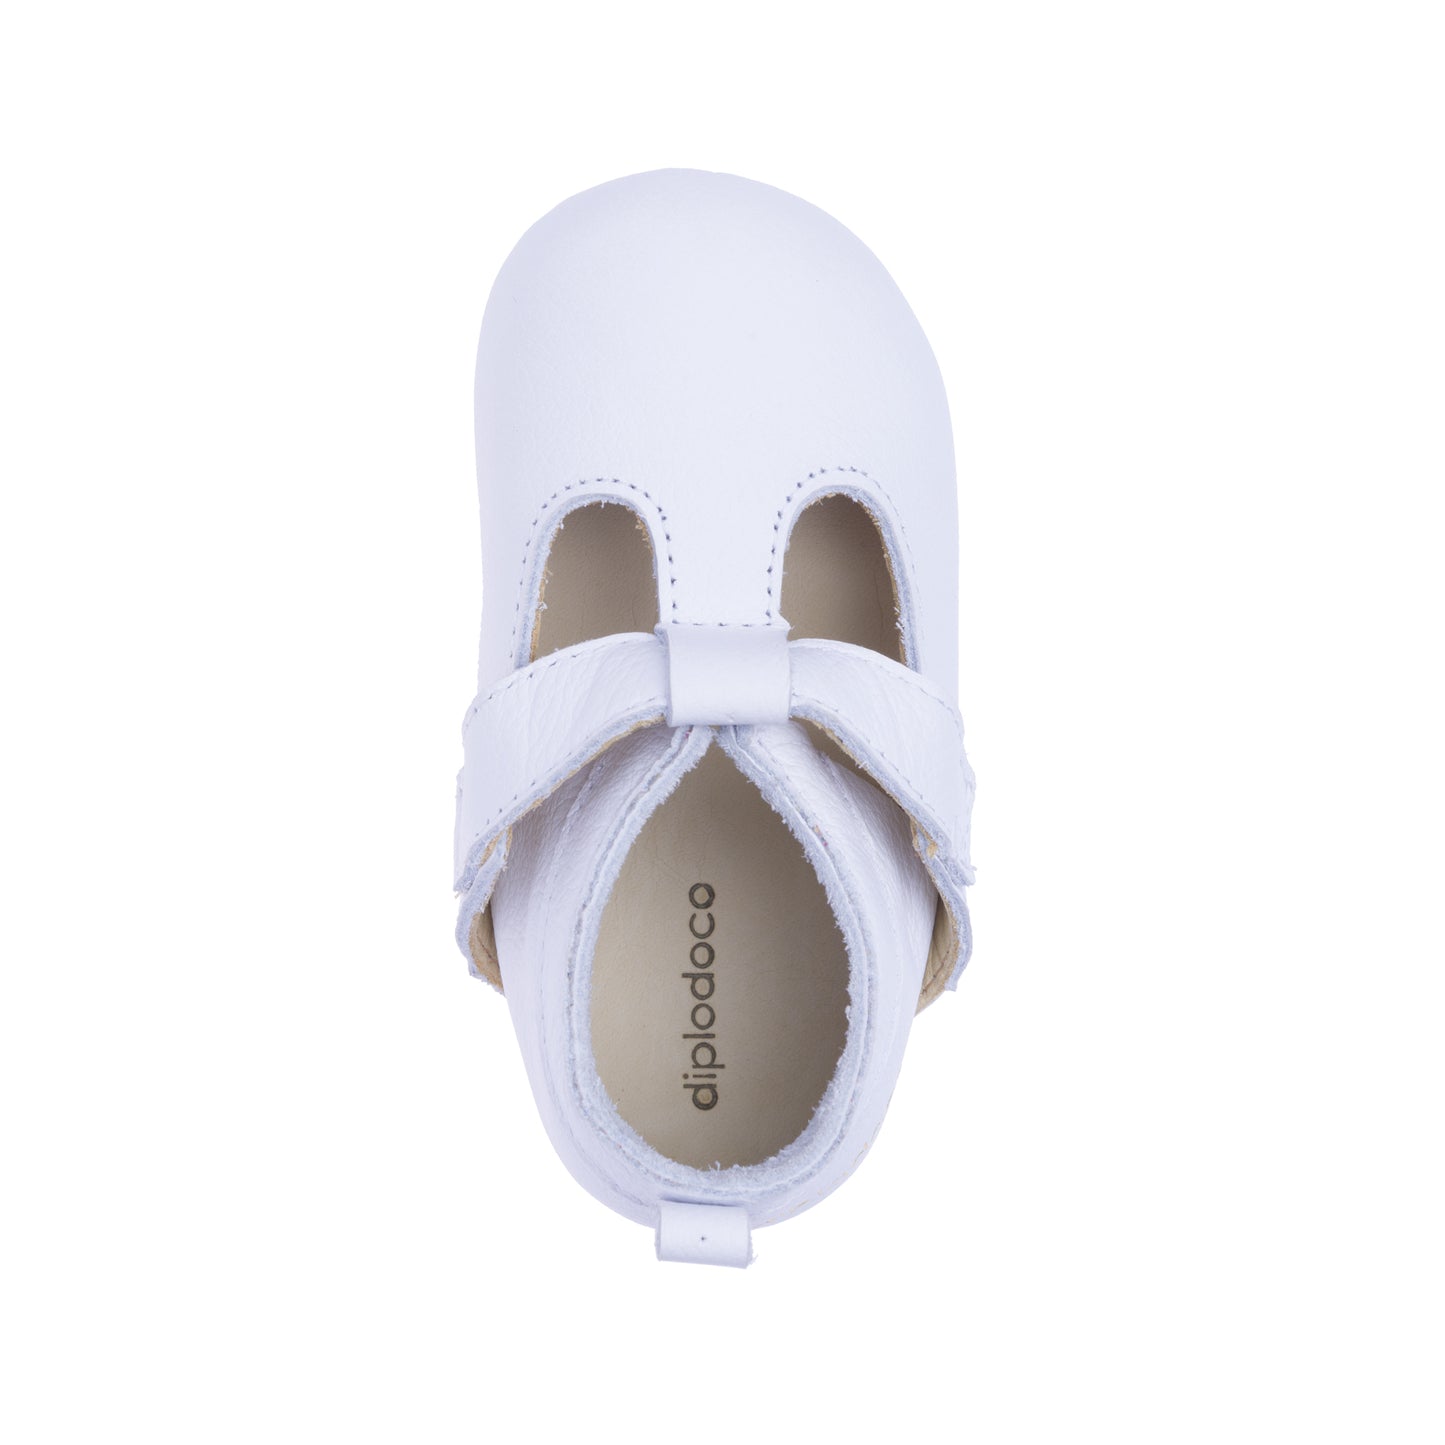 Sapato Infantil Lalenga Branco - Linha Crescidinhos